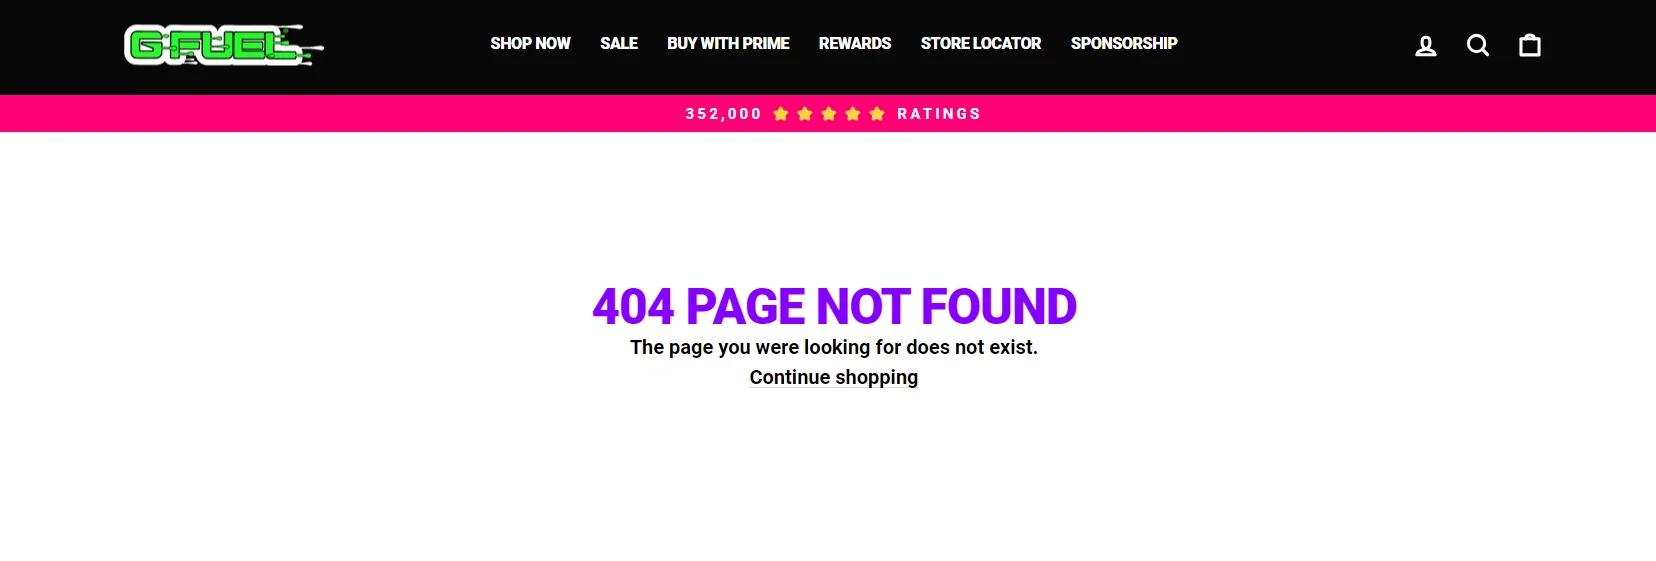 Ett felmeddelande på G-Fuel-webbplatsen lyder "404 PAGE NOT FOUND Sidan du letade efter finns inte."